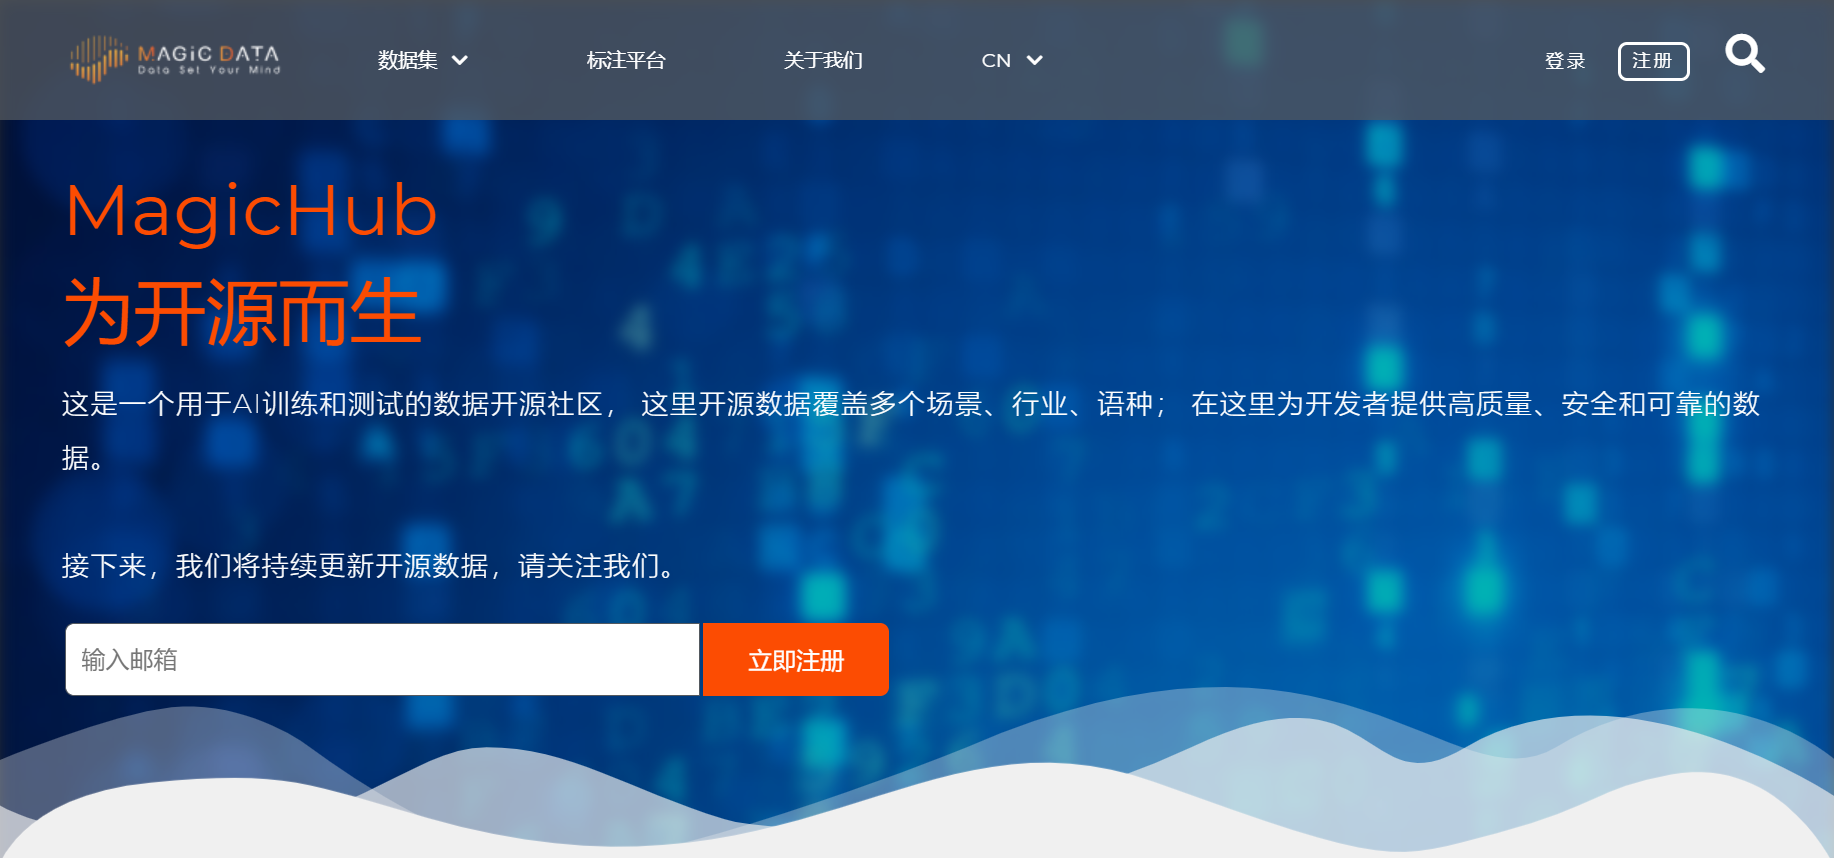 linux中国 开源社区_linux中国 开源社区_开源中国社区 j2me 软件